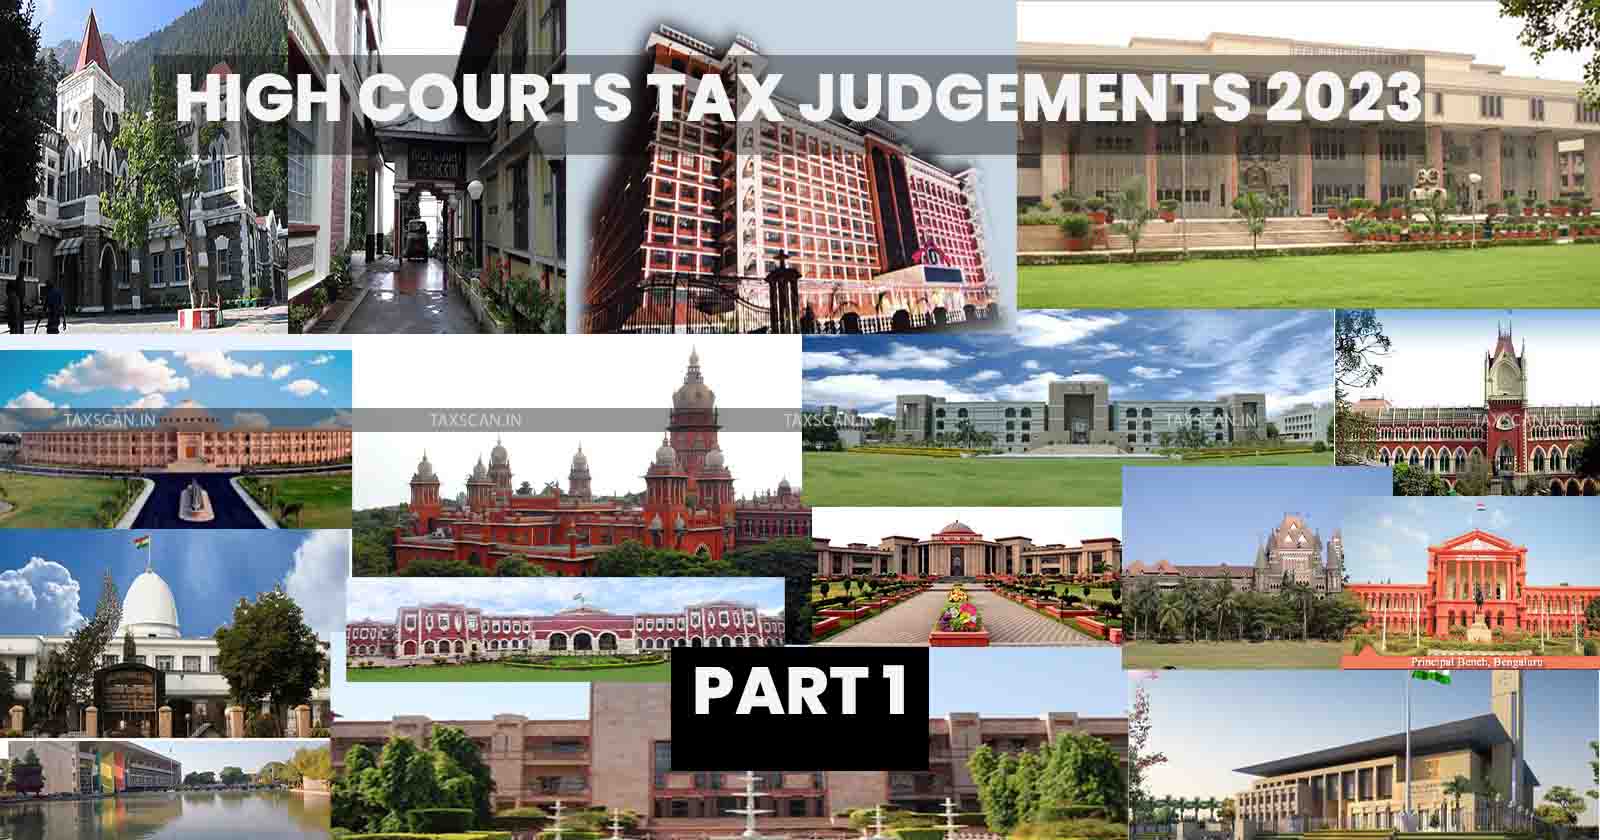 High Court Tax Judgements - Key Tax Judgements 2023 - Taxscan Annual Digest - Income Tax Case Summaries - GST Legal Updates - taxscan